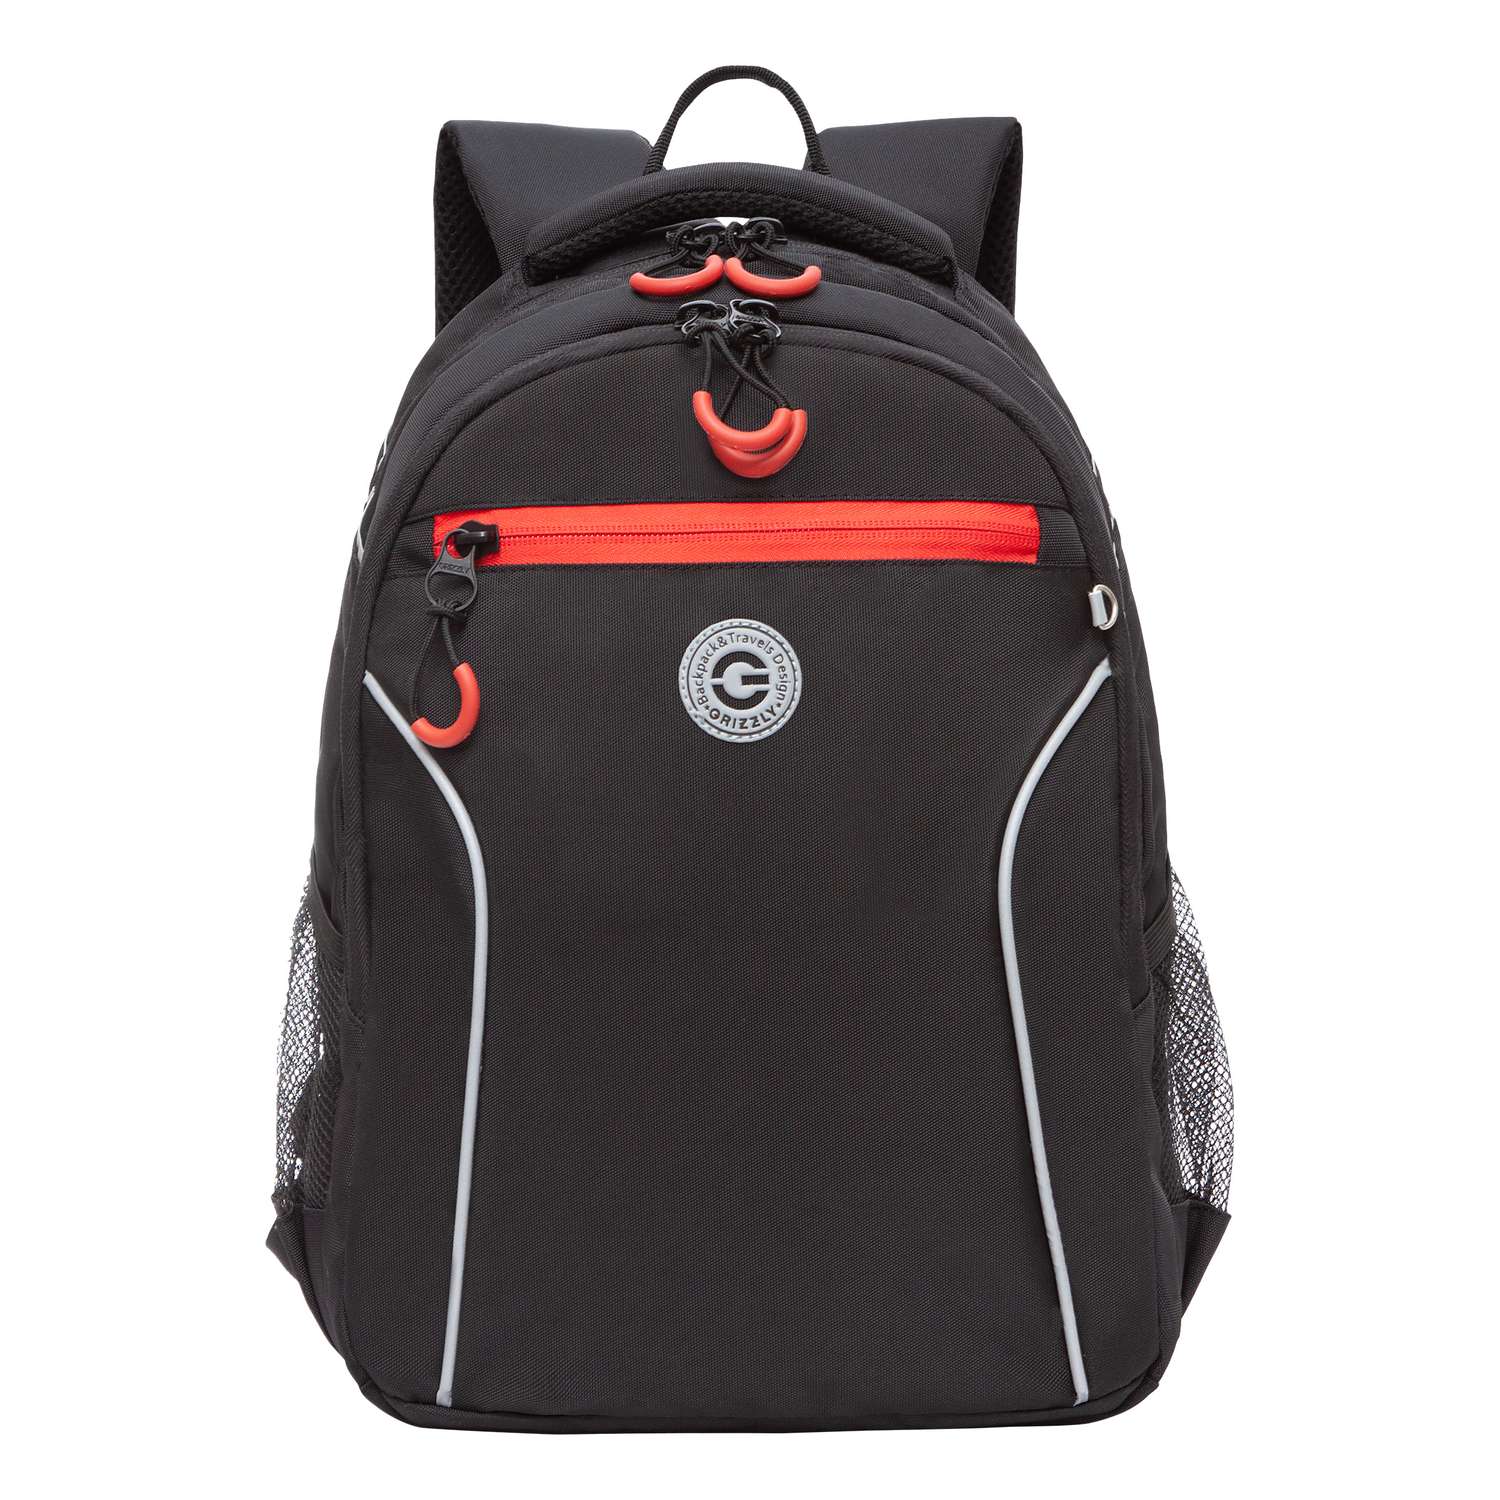 Рюкзак школьный Grizzly Черный-Красный RB-259-3/1 - фото 2